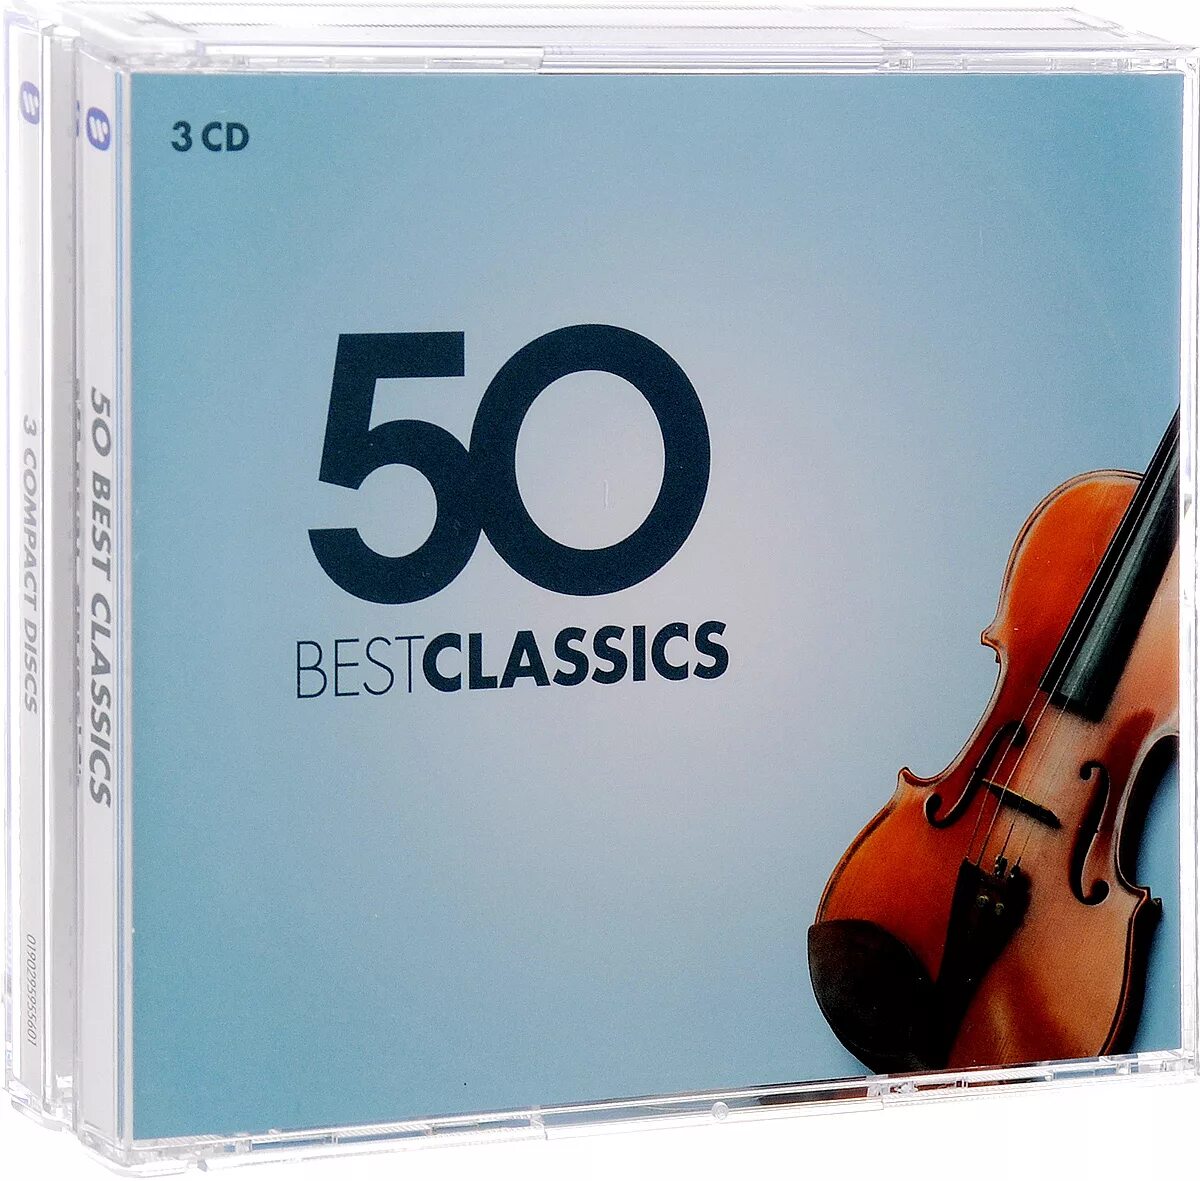 Classic cd. Бест Классик. Сборник классической музыки. 50 Best Classics. R&S Classics CD.